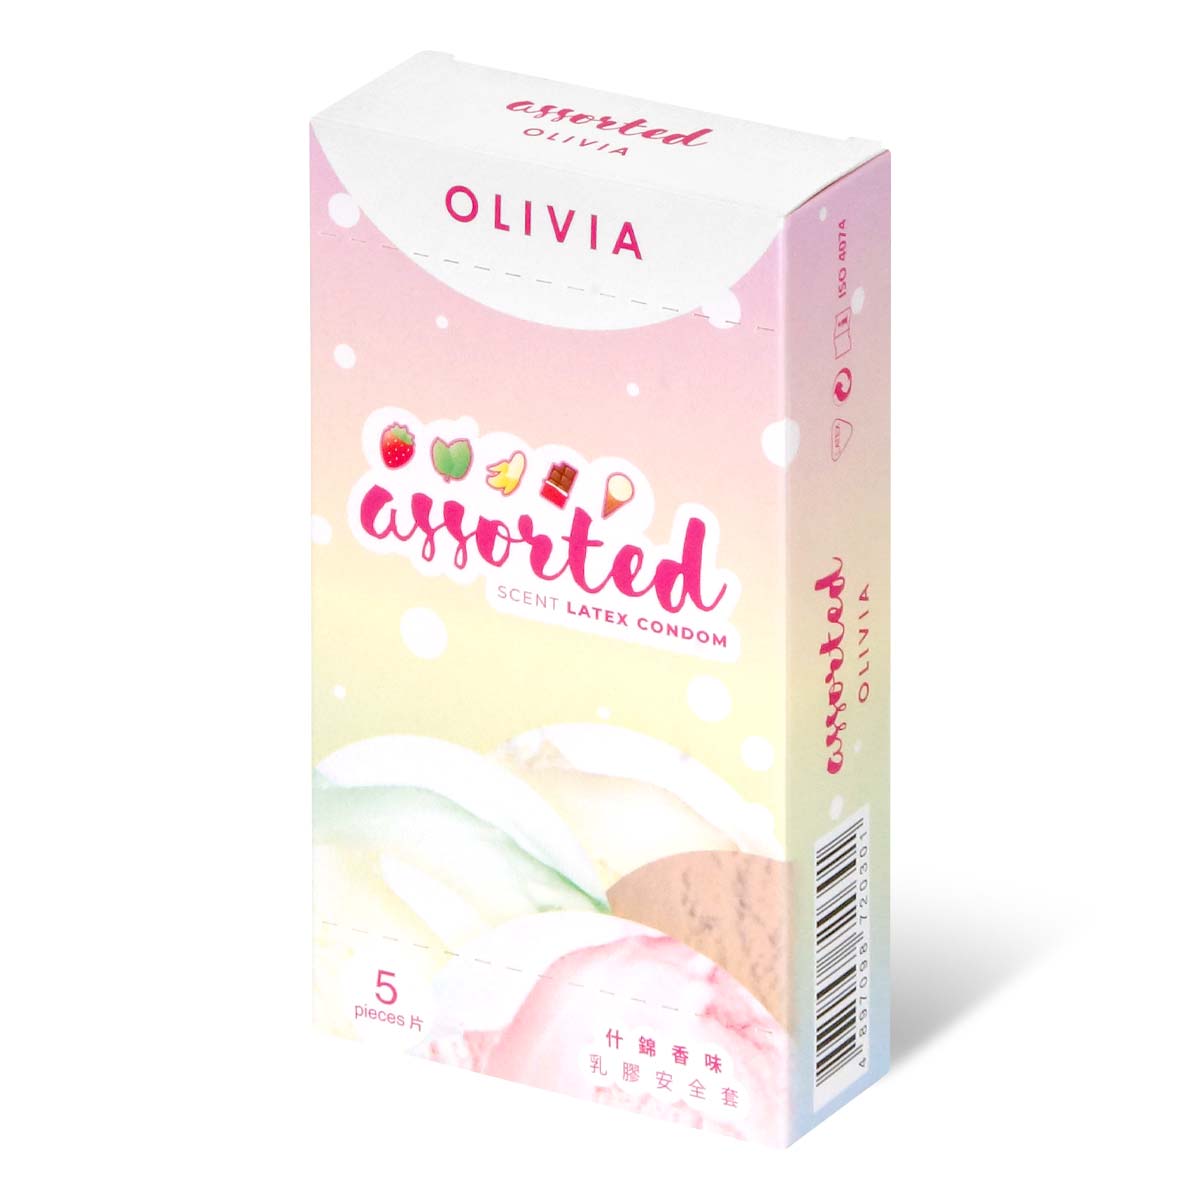 Olivia Assorted Scent Oral Condom 5's Pack Latex Condom ()-p_1